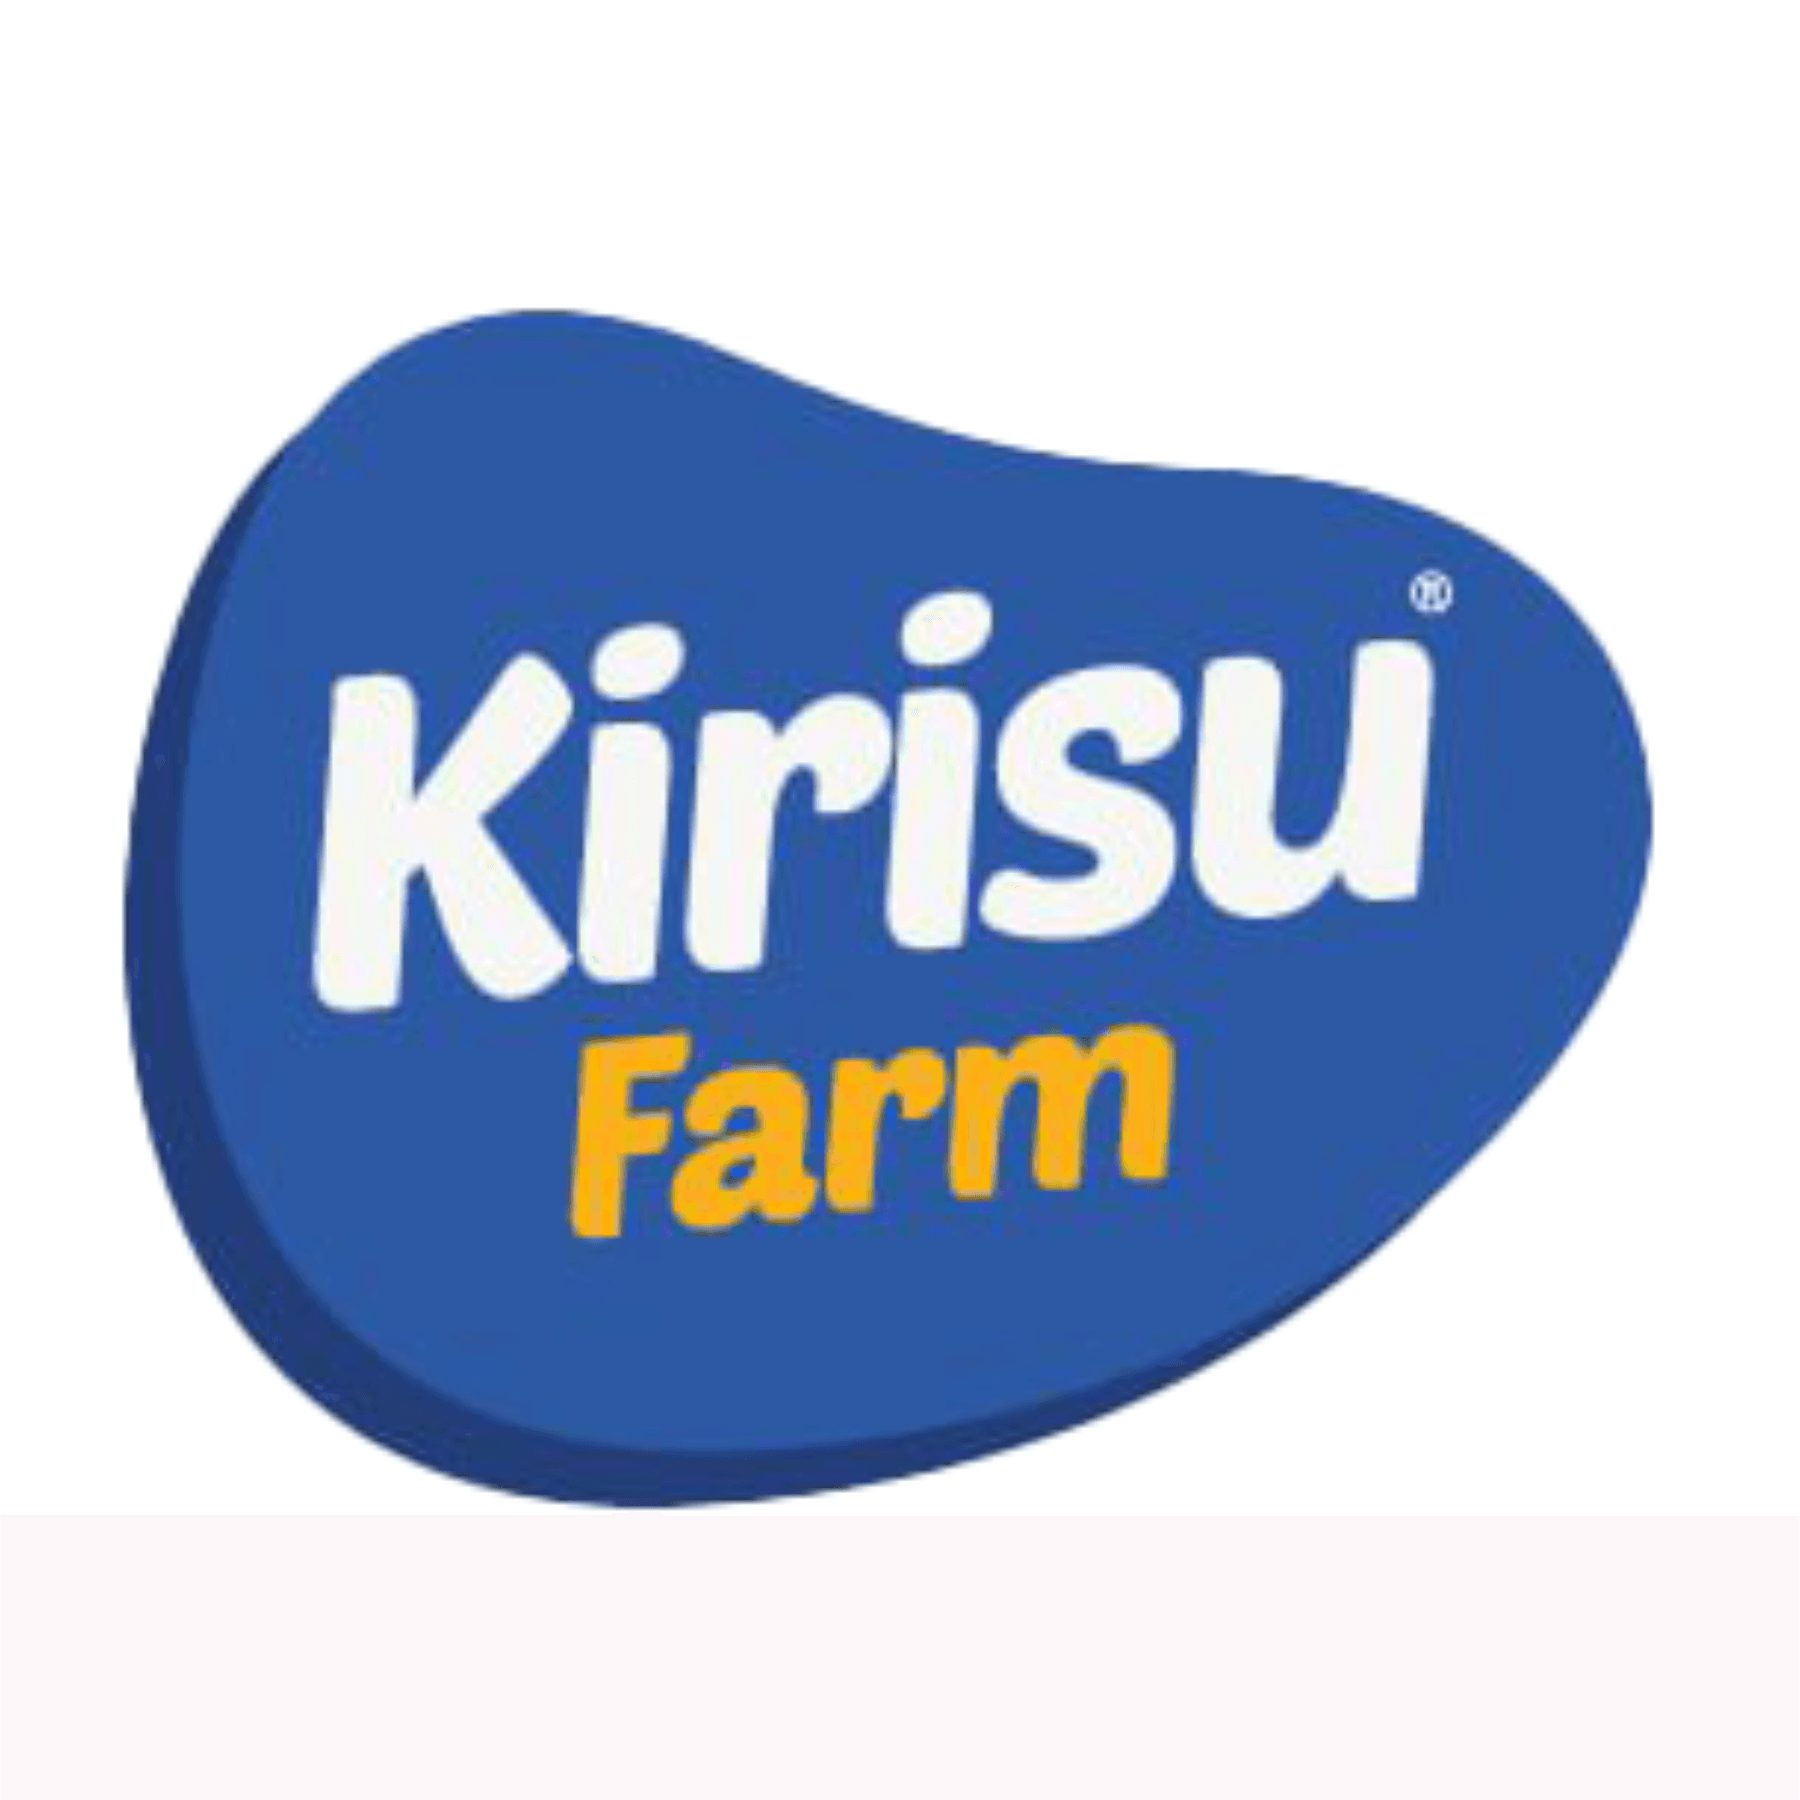 Kirisu Farm